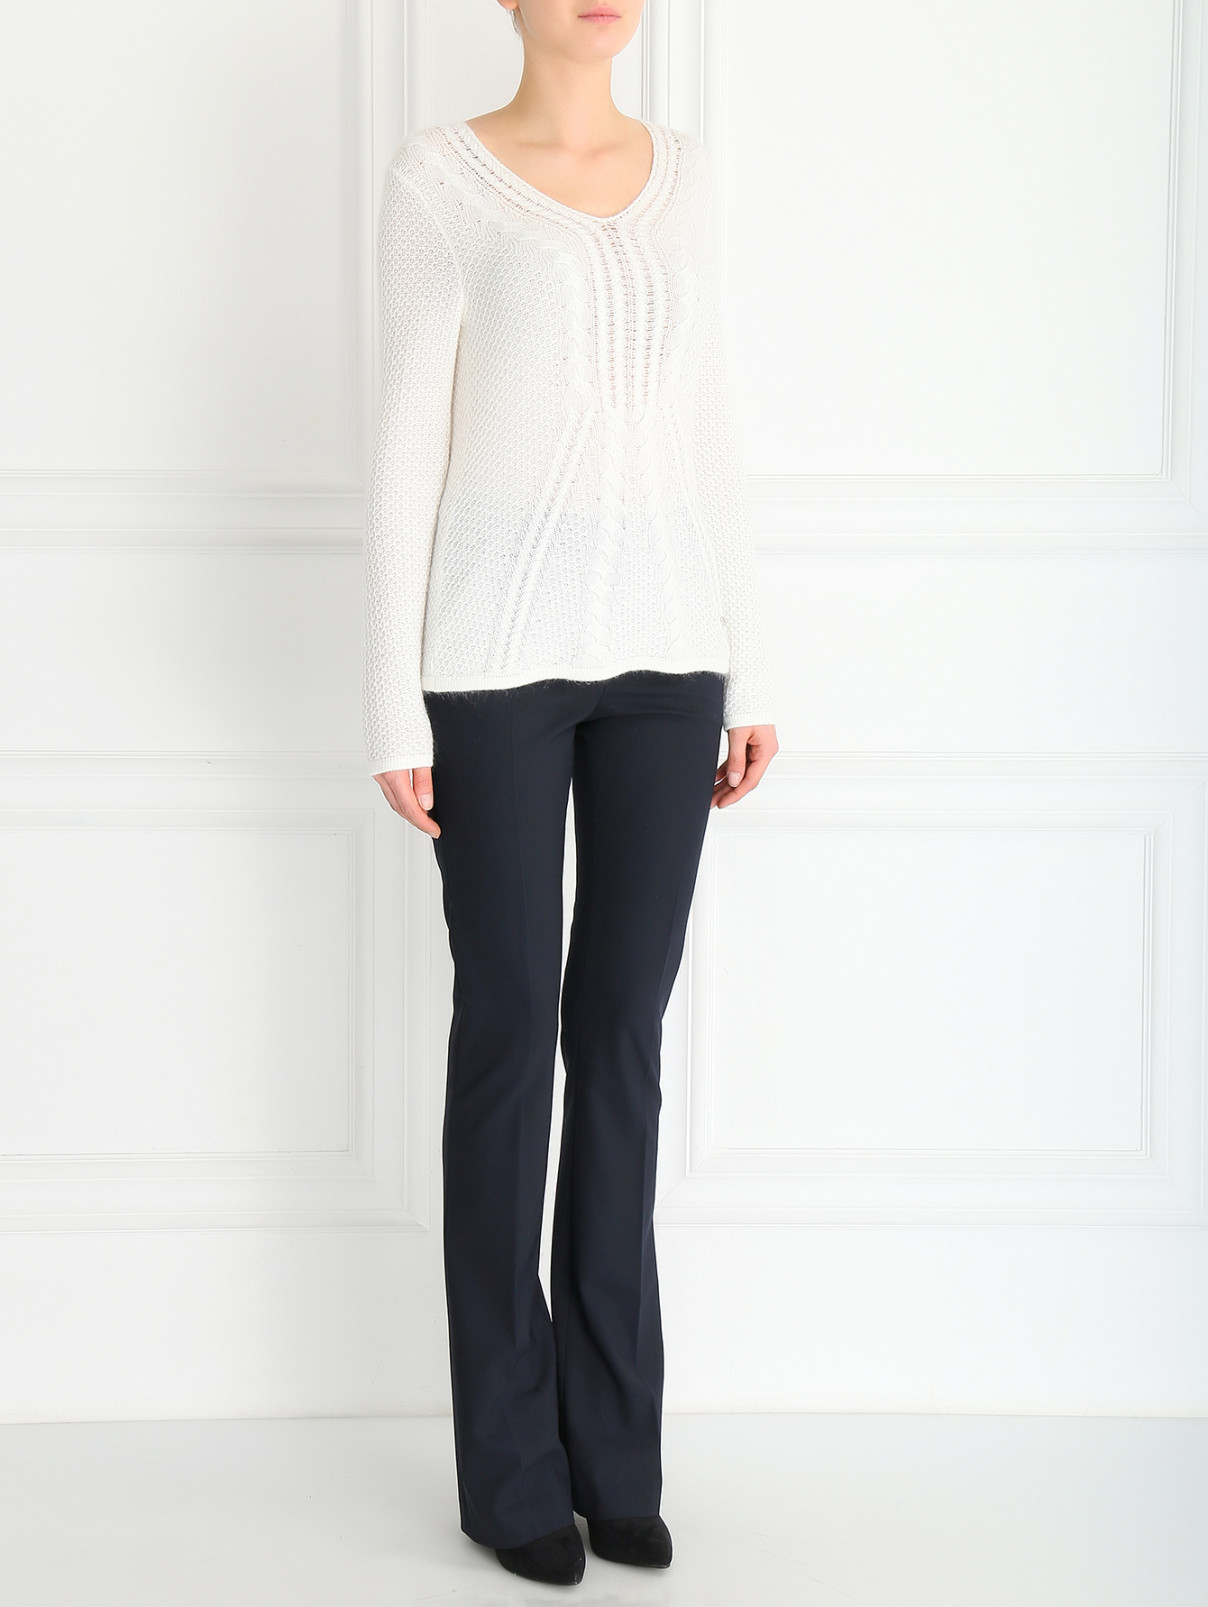 Джемпер с V-образным вырезом мелкой вязки Armani Jeans  –  Модель Общий вид  – Цвет:  Белый